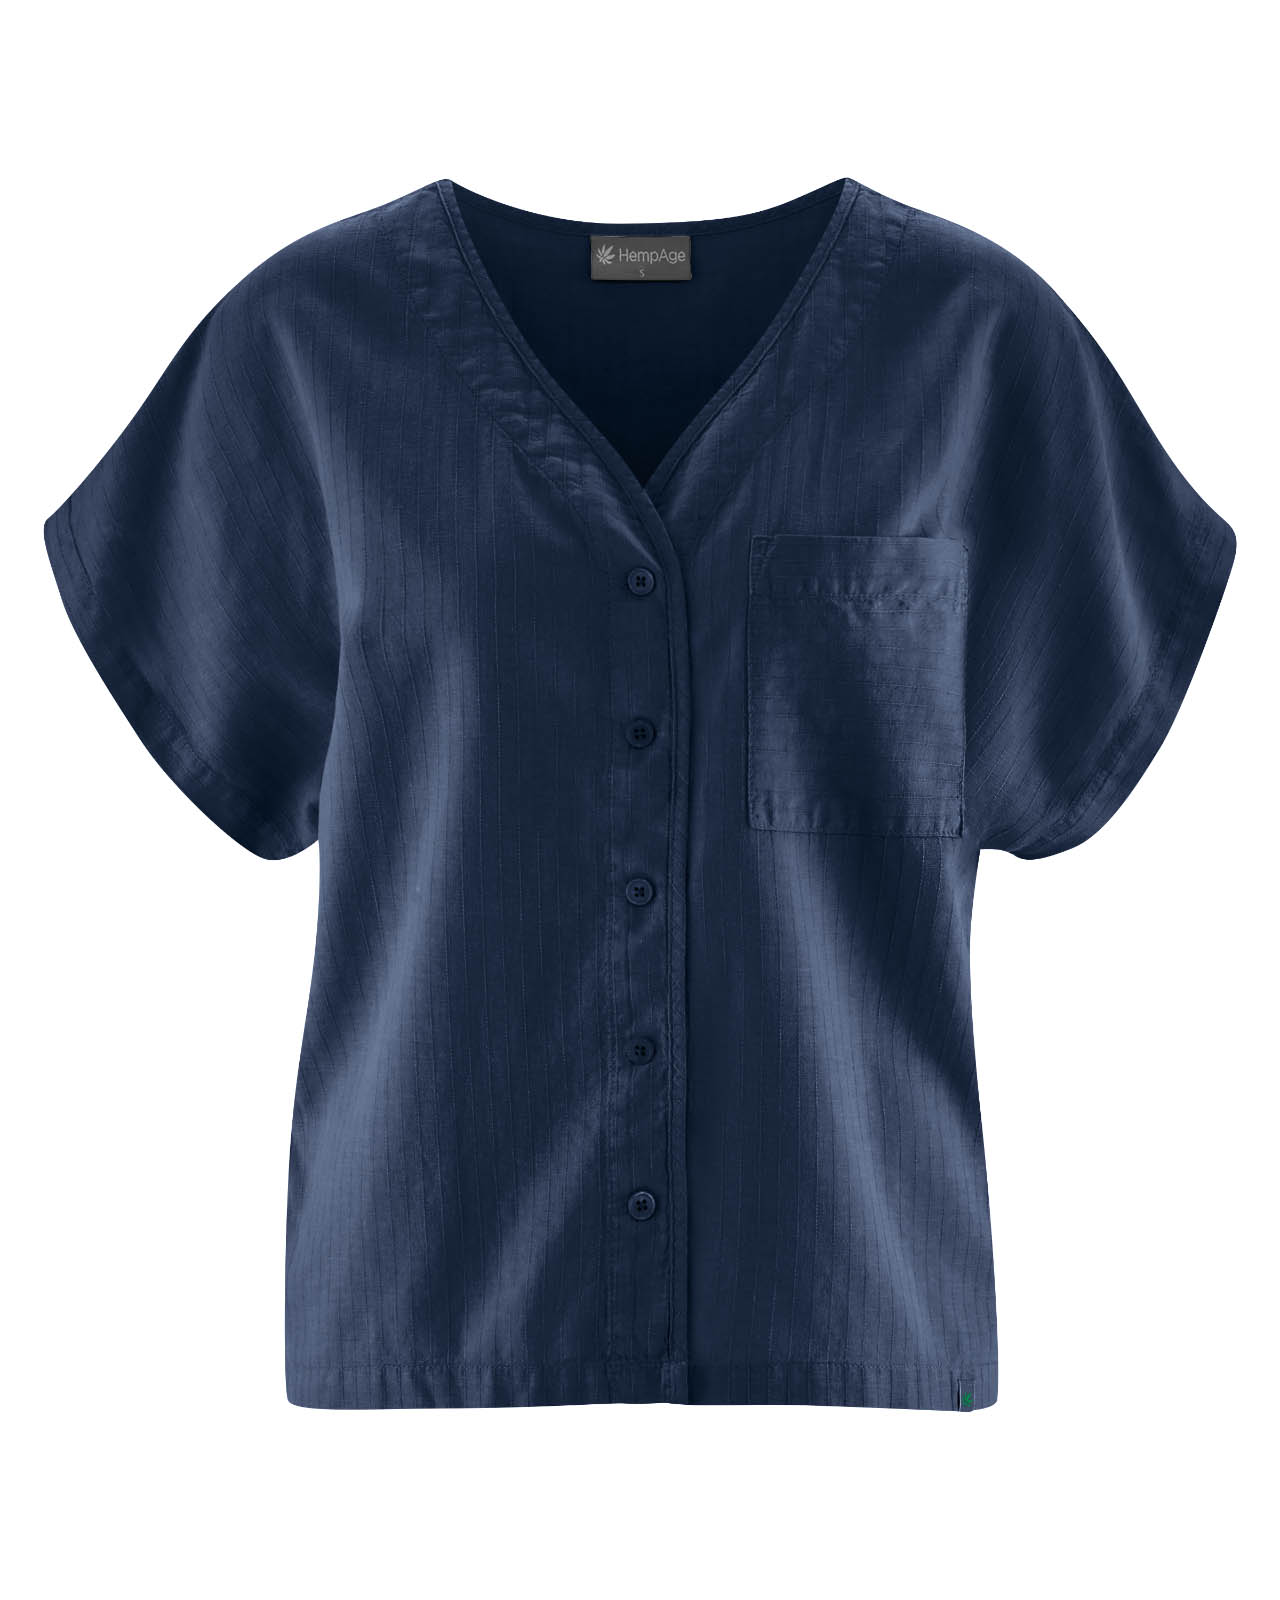 blouse-coton-bio_DH193_navy